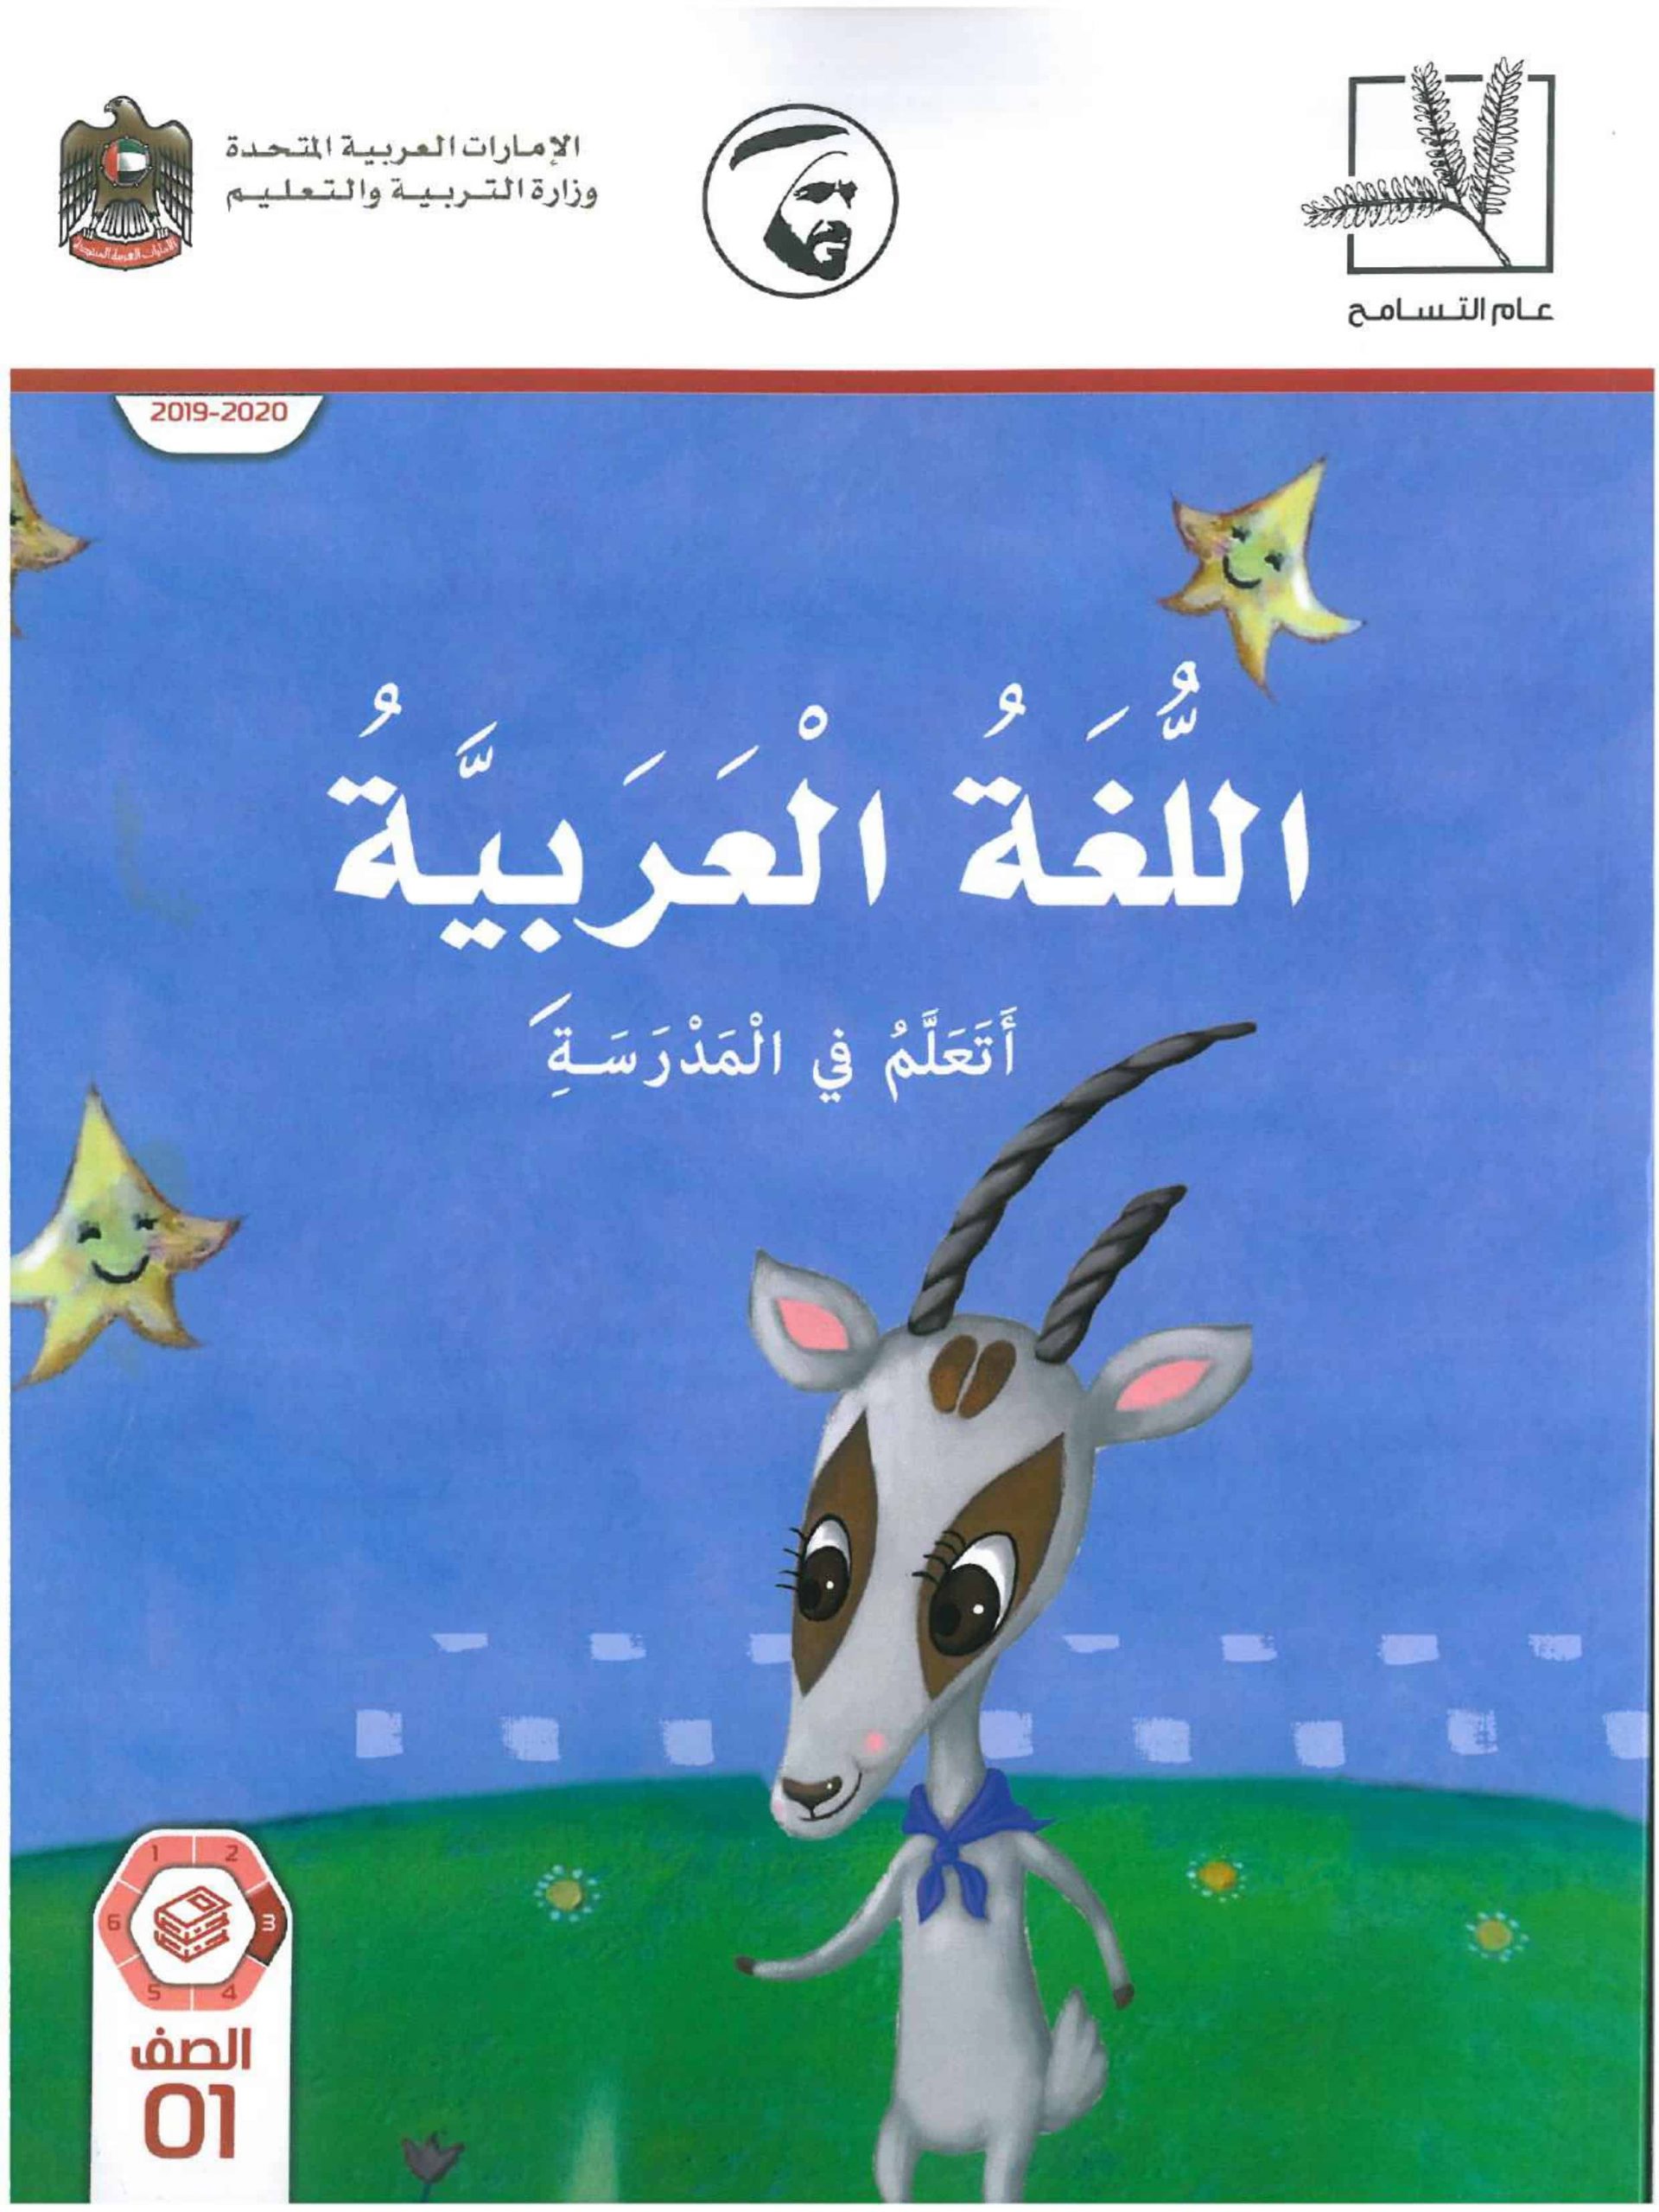 كتاب الطالب اتعلم في المدرسة الفصل الدراس الثاني 2020-2021 الصف الاول مادة اللغة العربية 